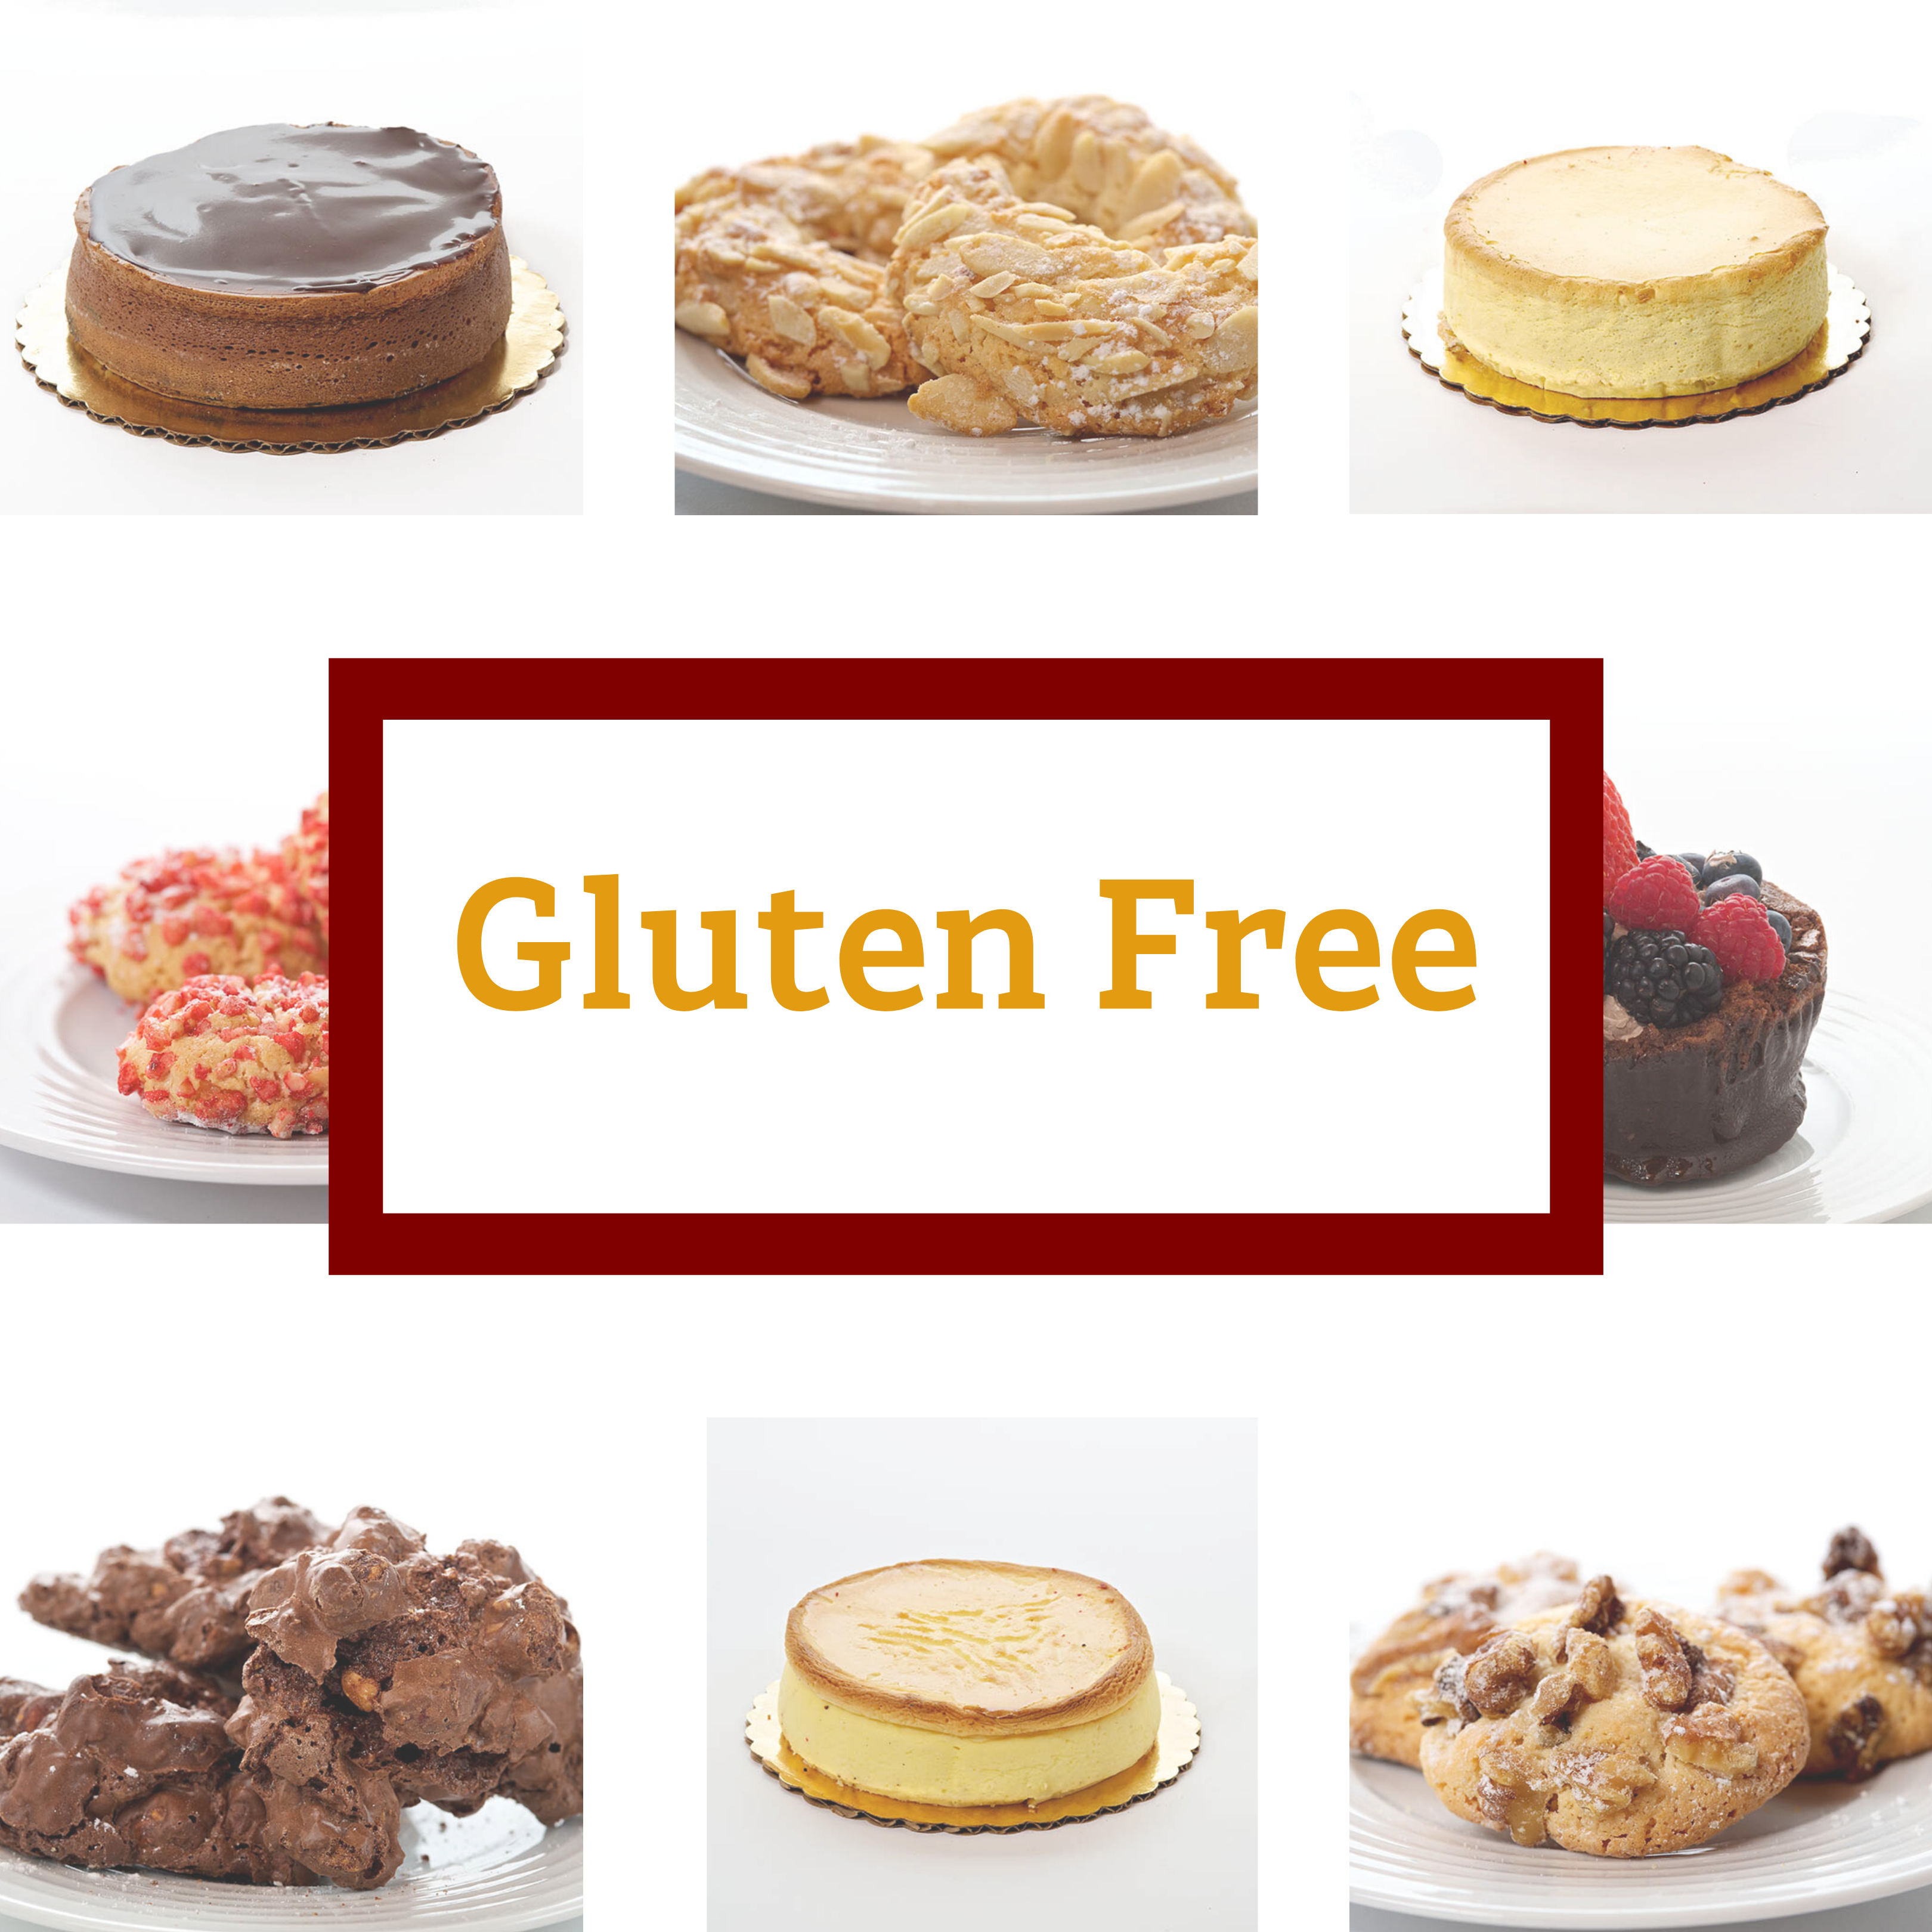 Gluten-free options on sale